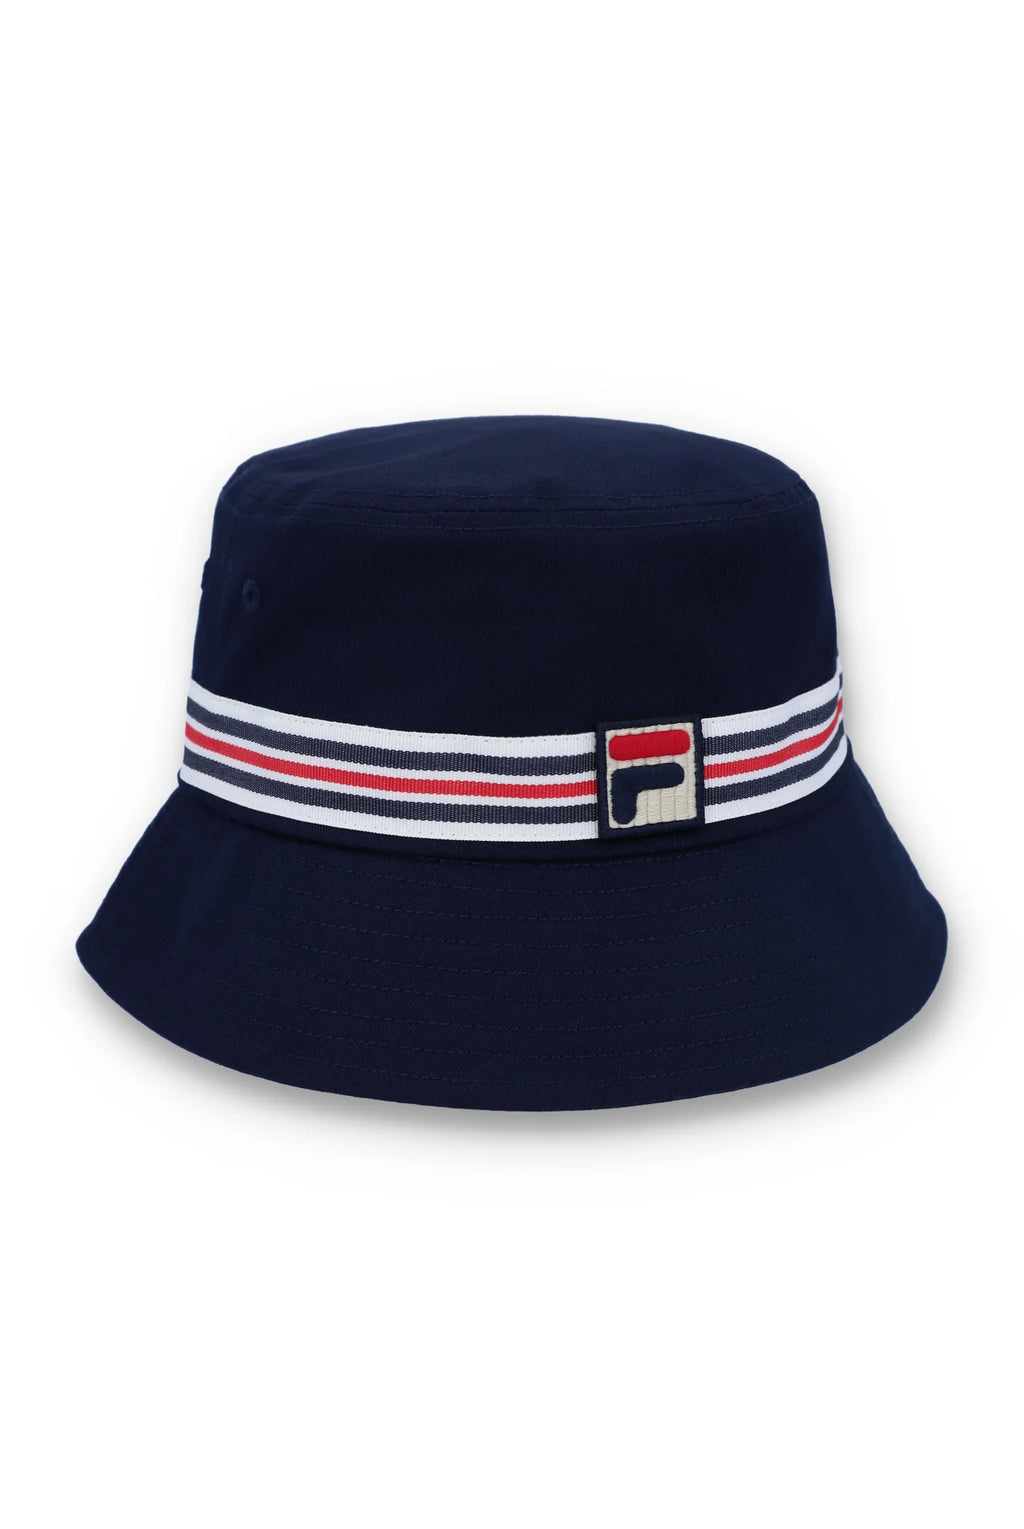 FILA Jojo Heritage Stripe Bucket Hat Navy - Raw Menswear